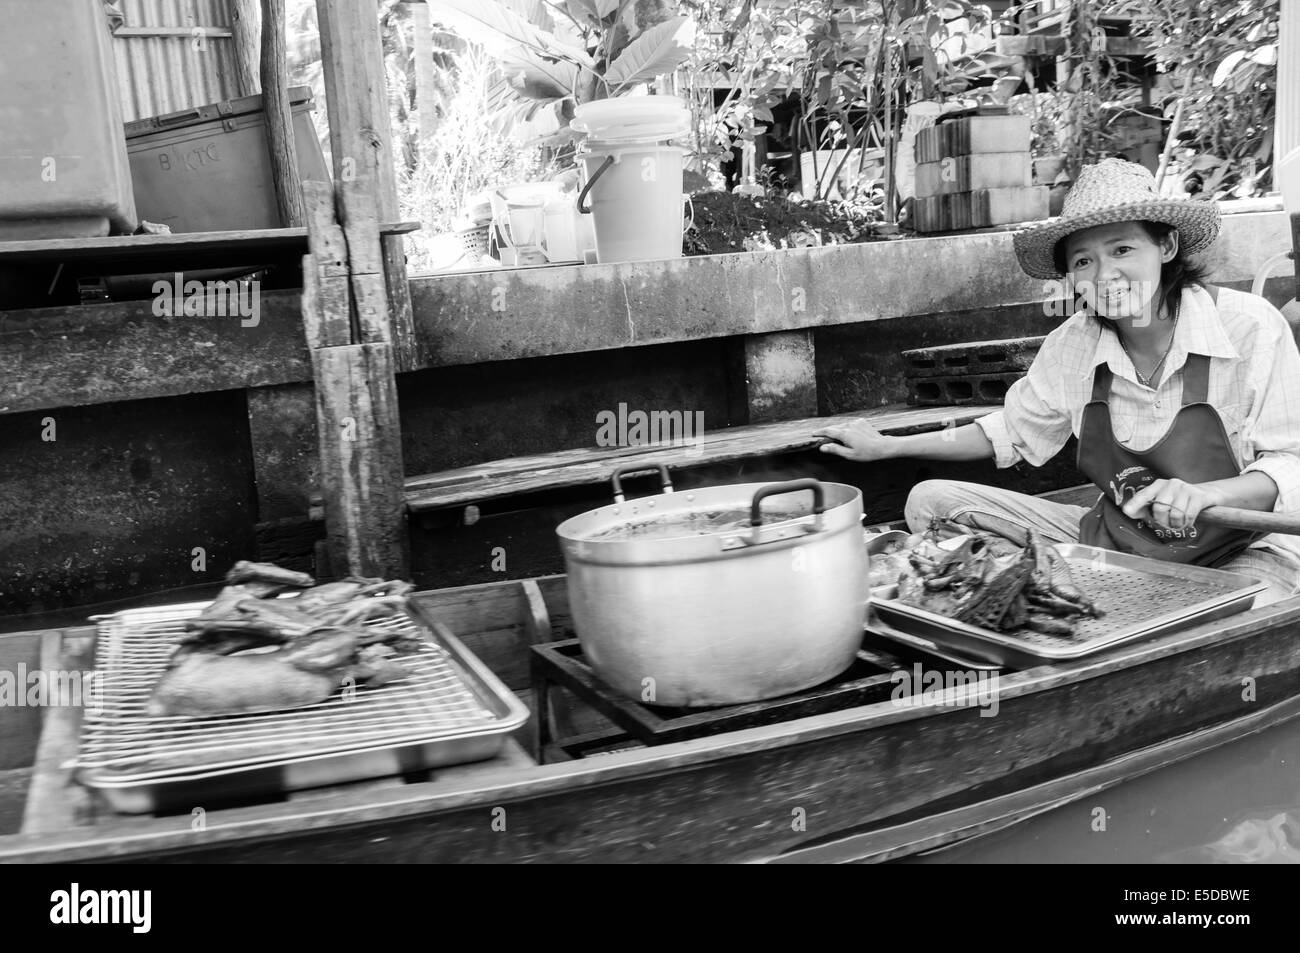 Les gens vendent de la nourriture thaï et de souvenirs au célèbre marché flottant de Damnoen Saduak en Thaïlande Banque D'Images